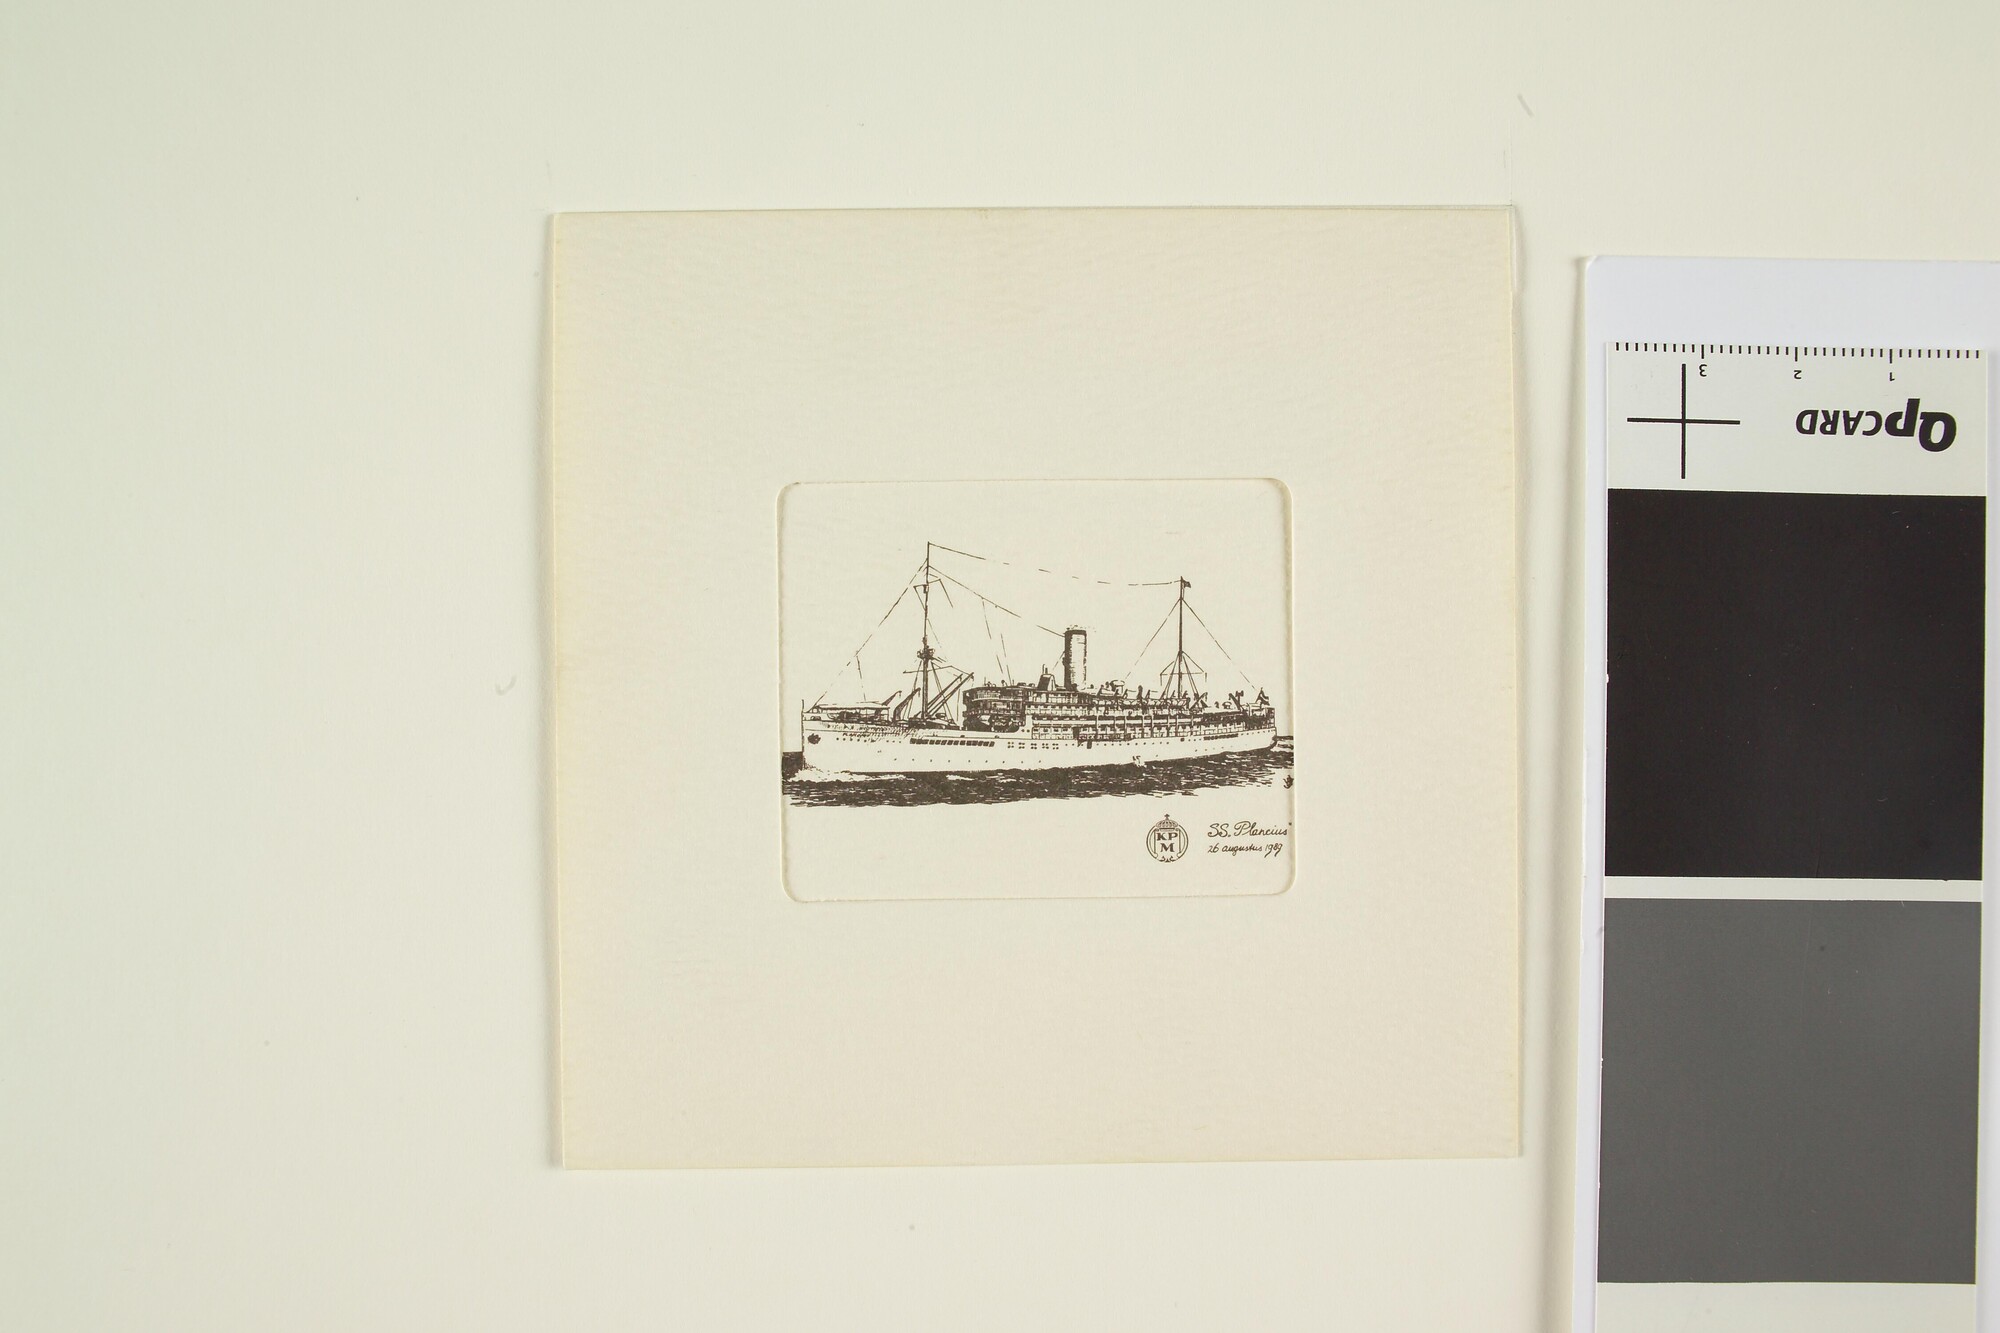 1991.0189; Prent van passagiersschip ss. Plancius, waarschijnlijk ter herdenking van een reunie, 1898; prent